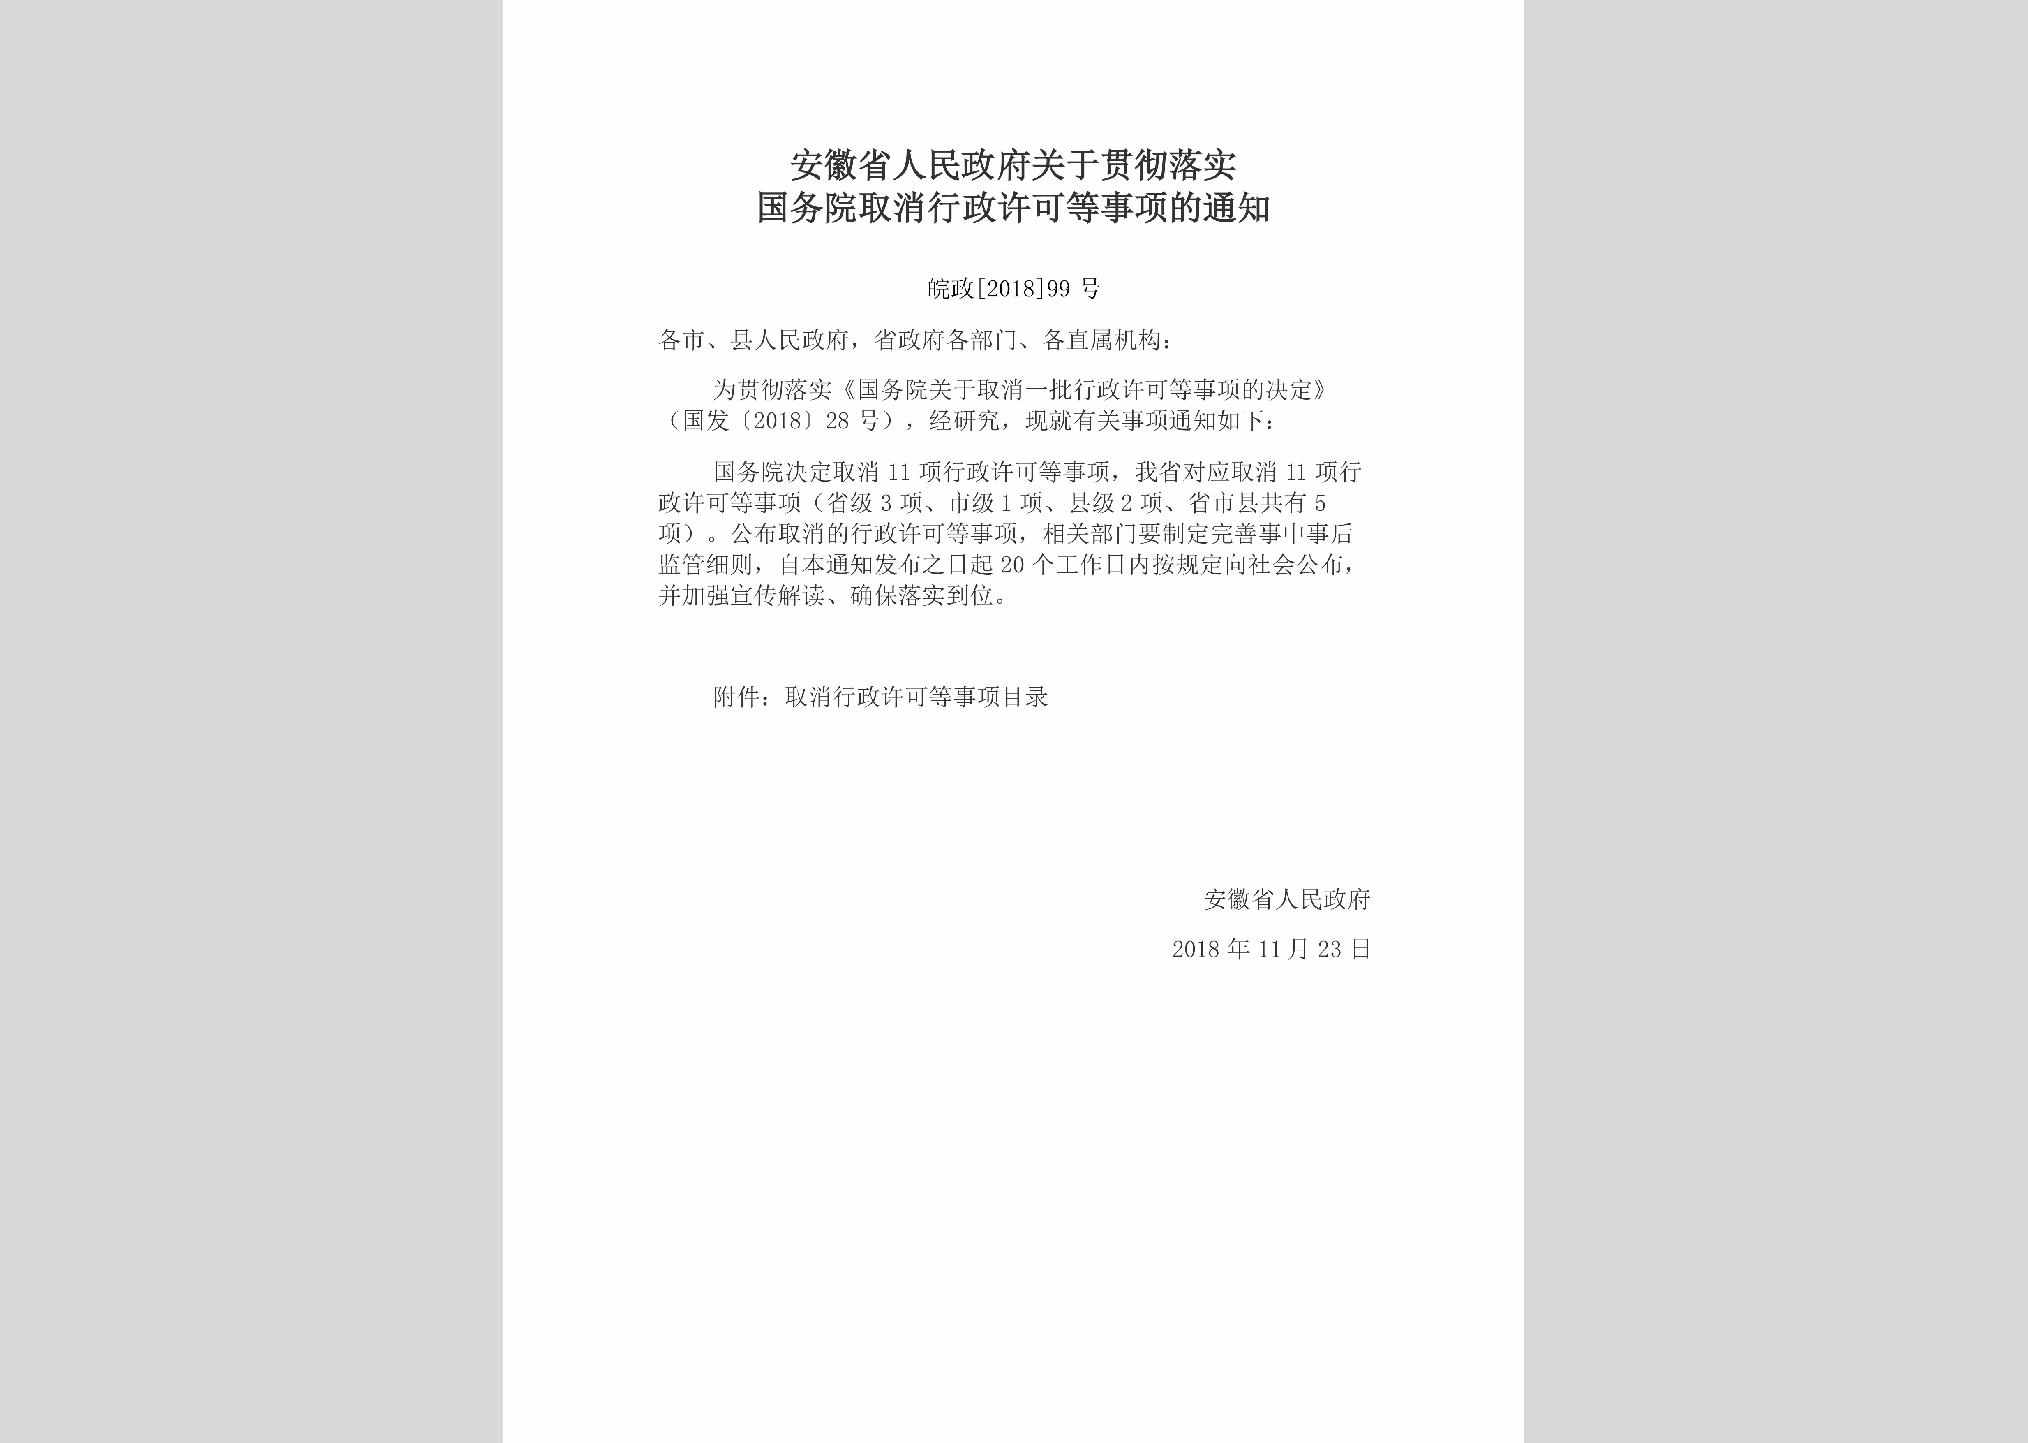 皖政[2018]99号：安徽省人民政府关于贯彻落实国务院取消行政许可等事项的通知